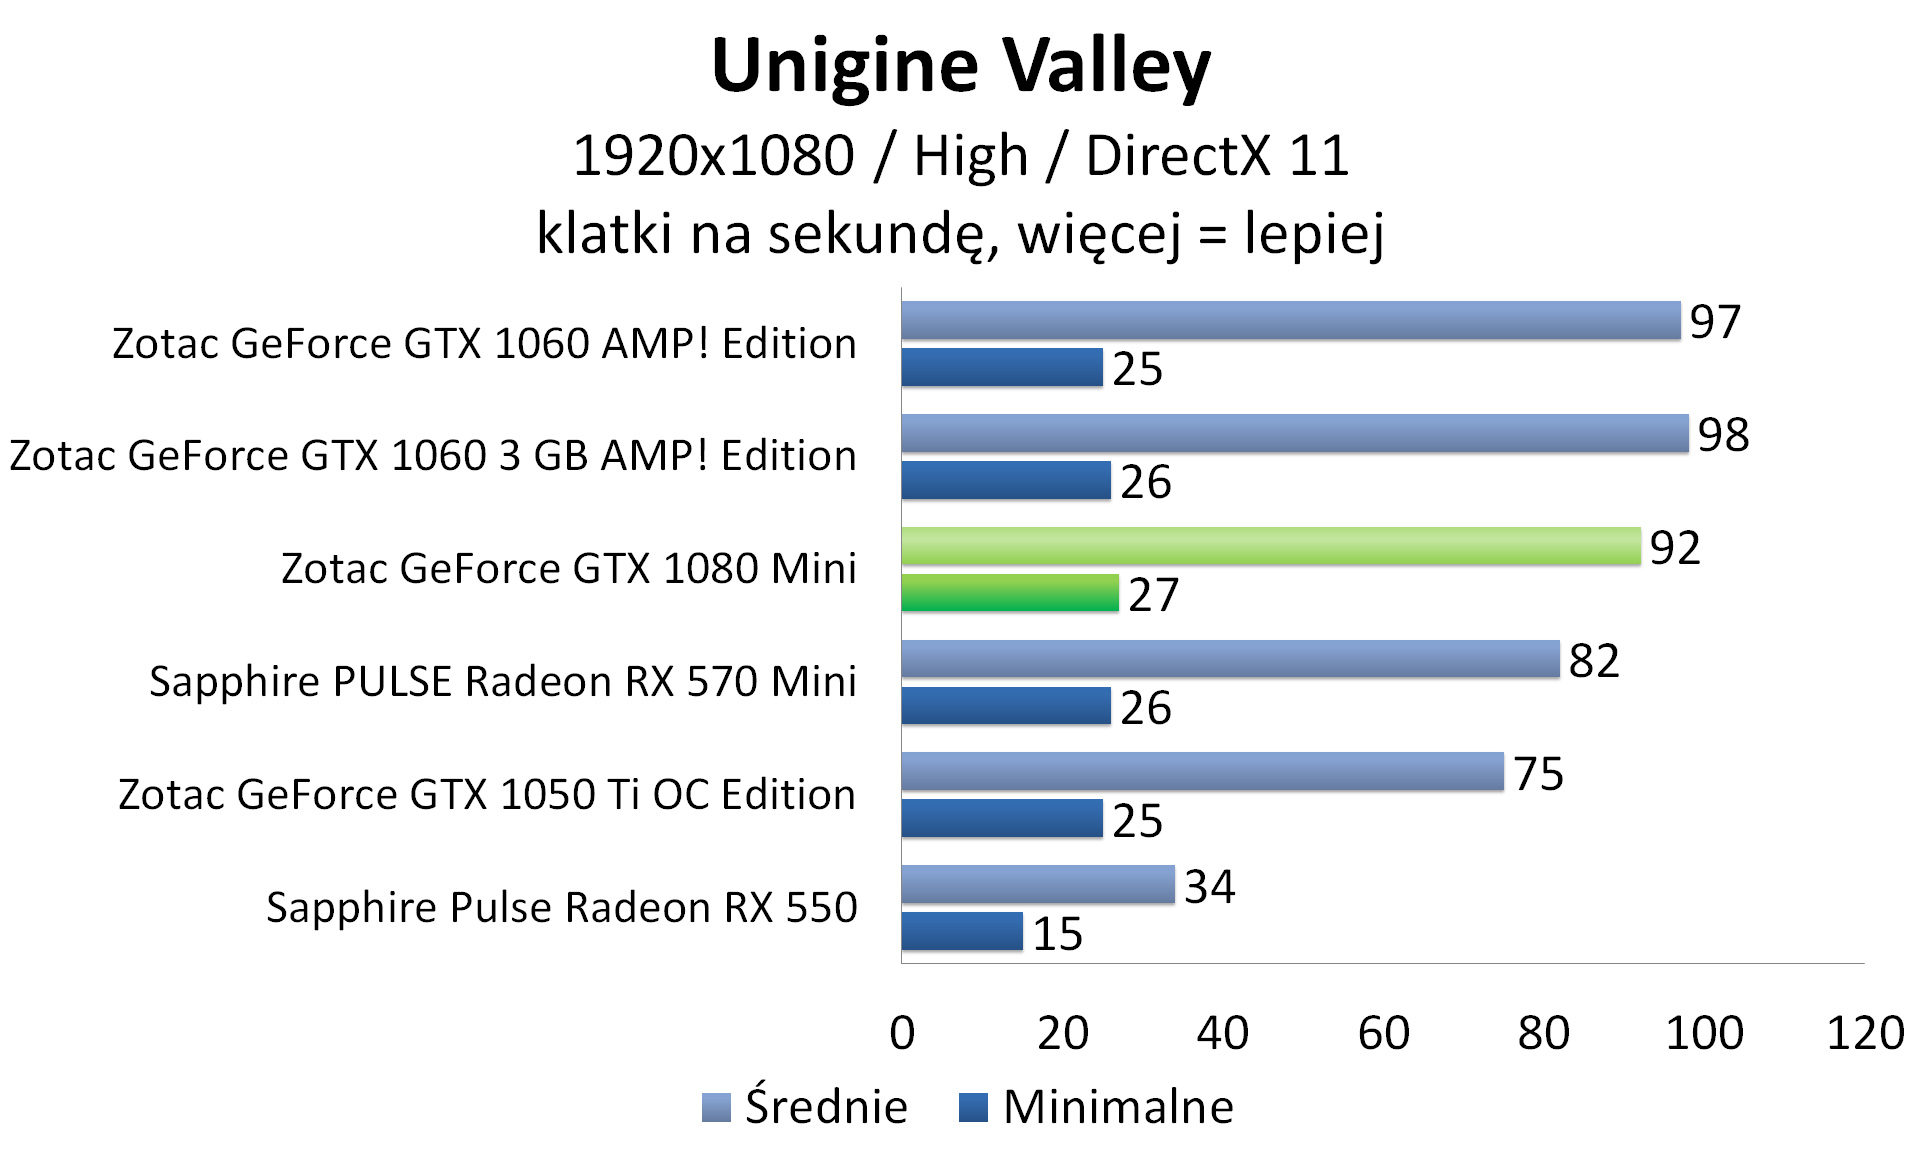 Zotac GeForce GTX 1080 Mini - Unigine Valley